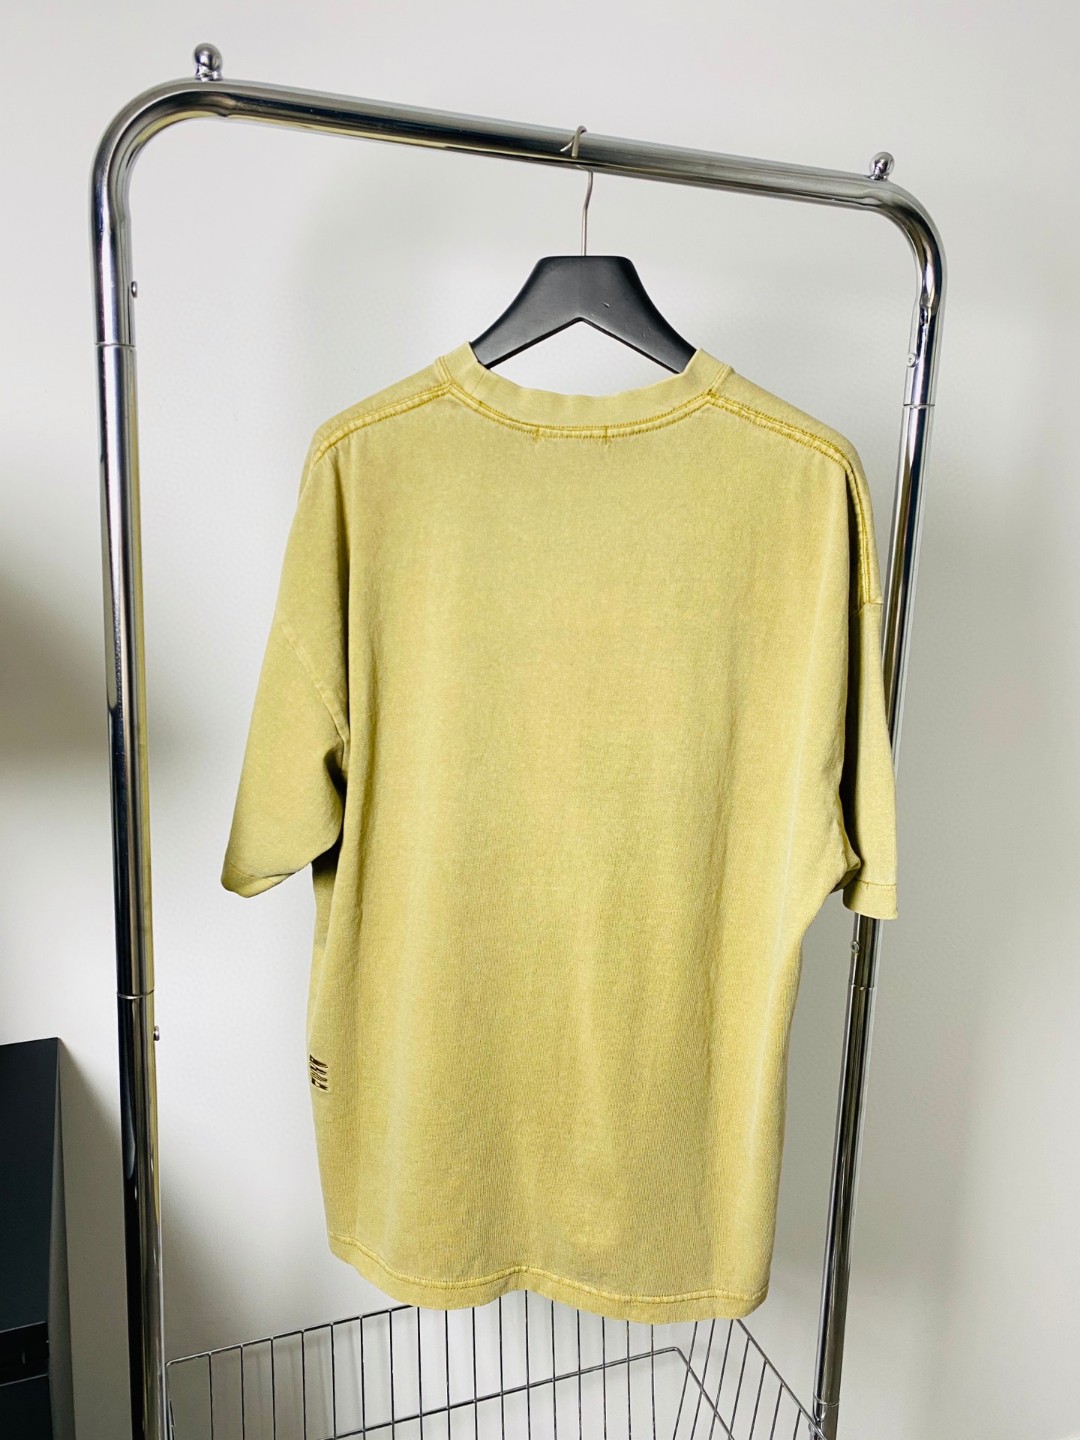 春新作 ノーティカ スイングトップ偽物 純綿 大人気tシャツ トップス 短袖 ゆったり 品質保証 シンプル 柔らかい 4色可選_8